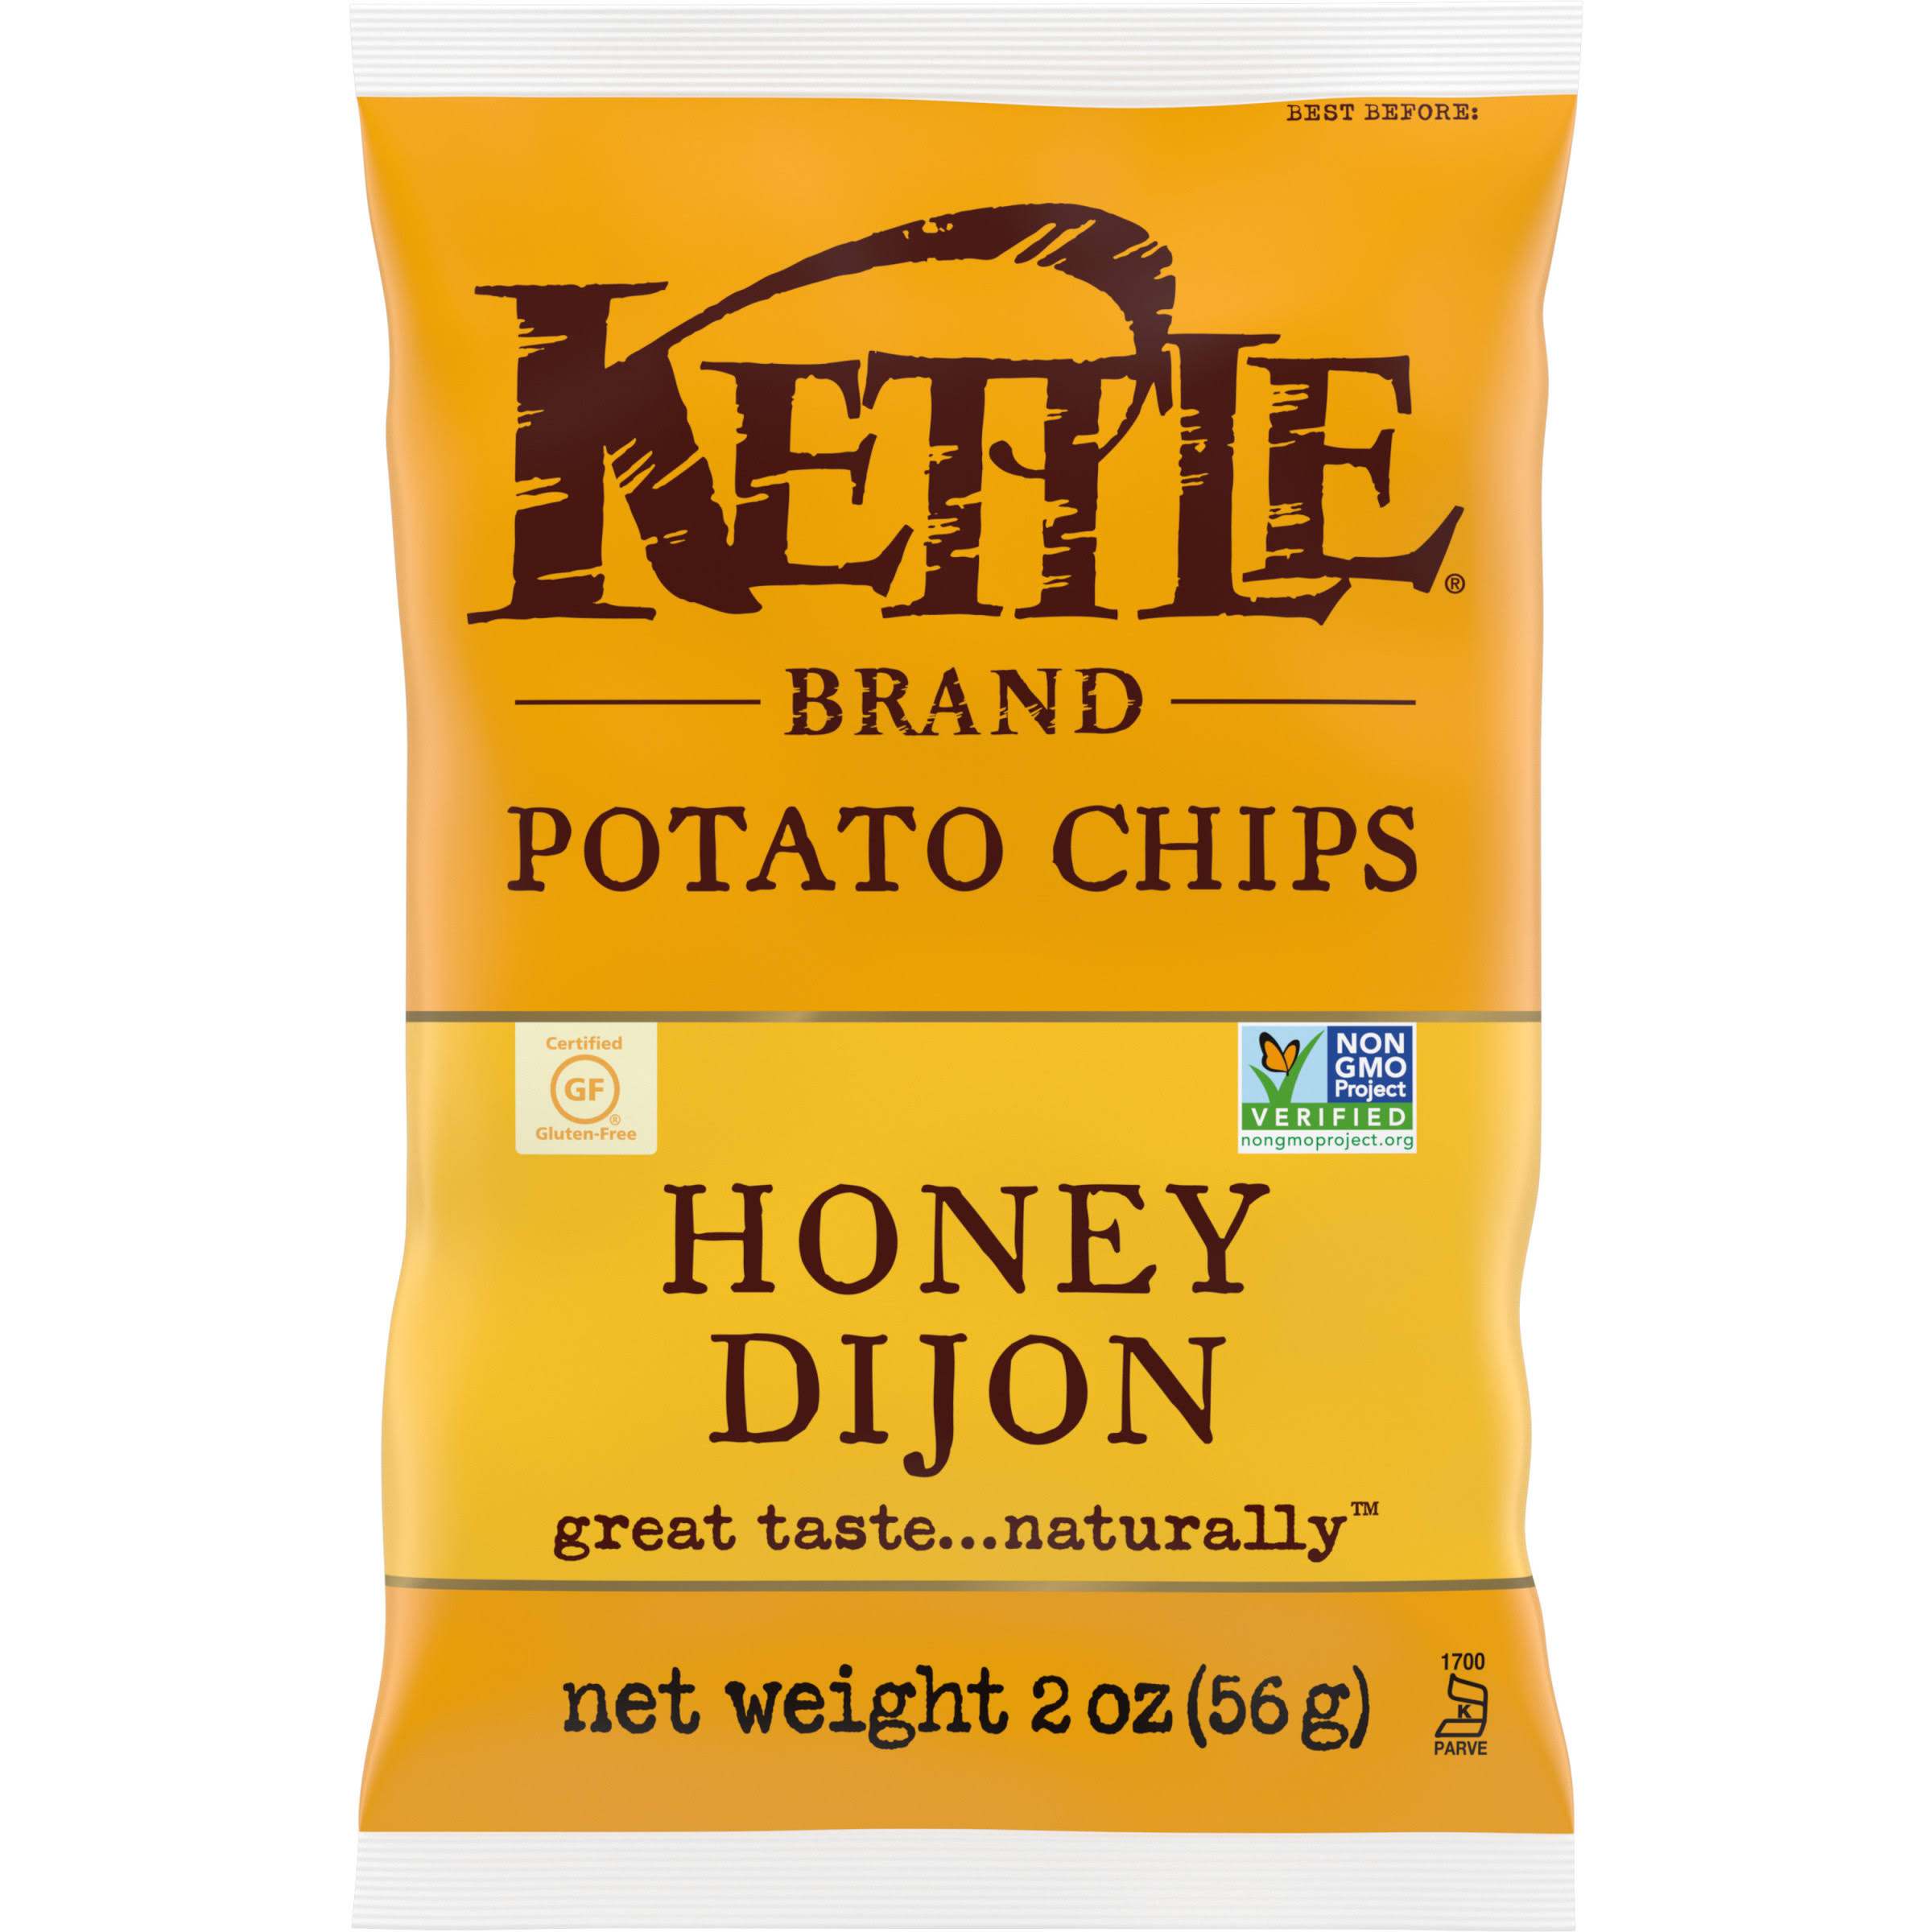 Kettle Brand Potato Chips - Honey Dijon, 56g